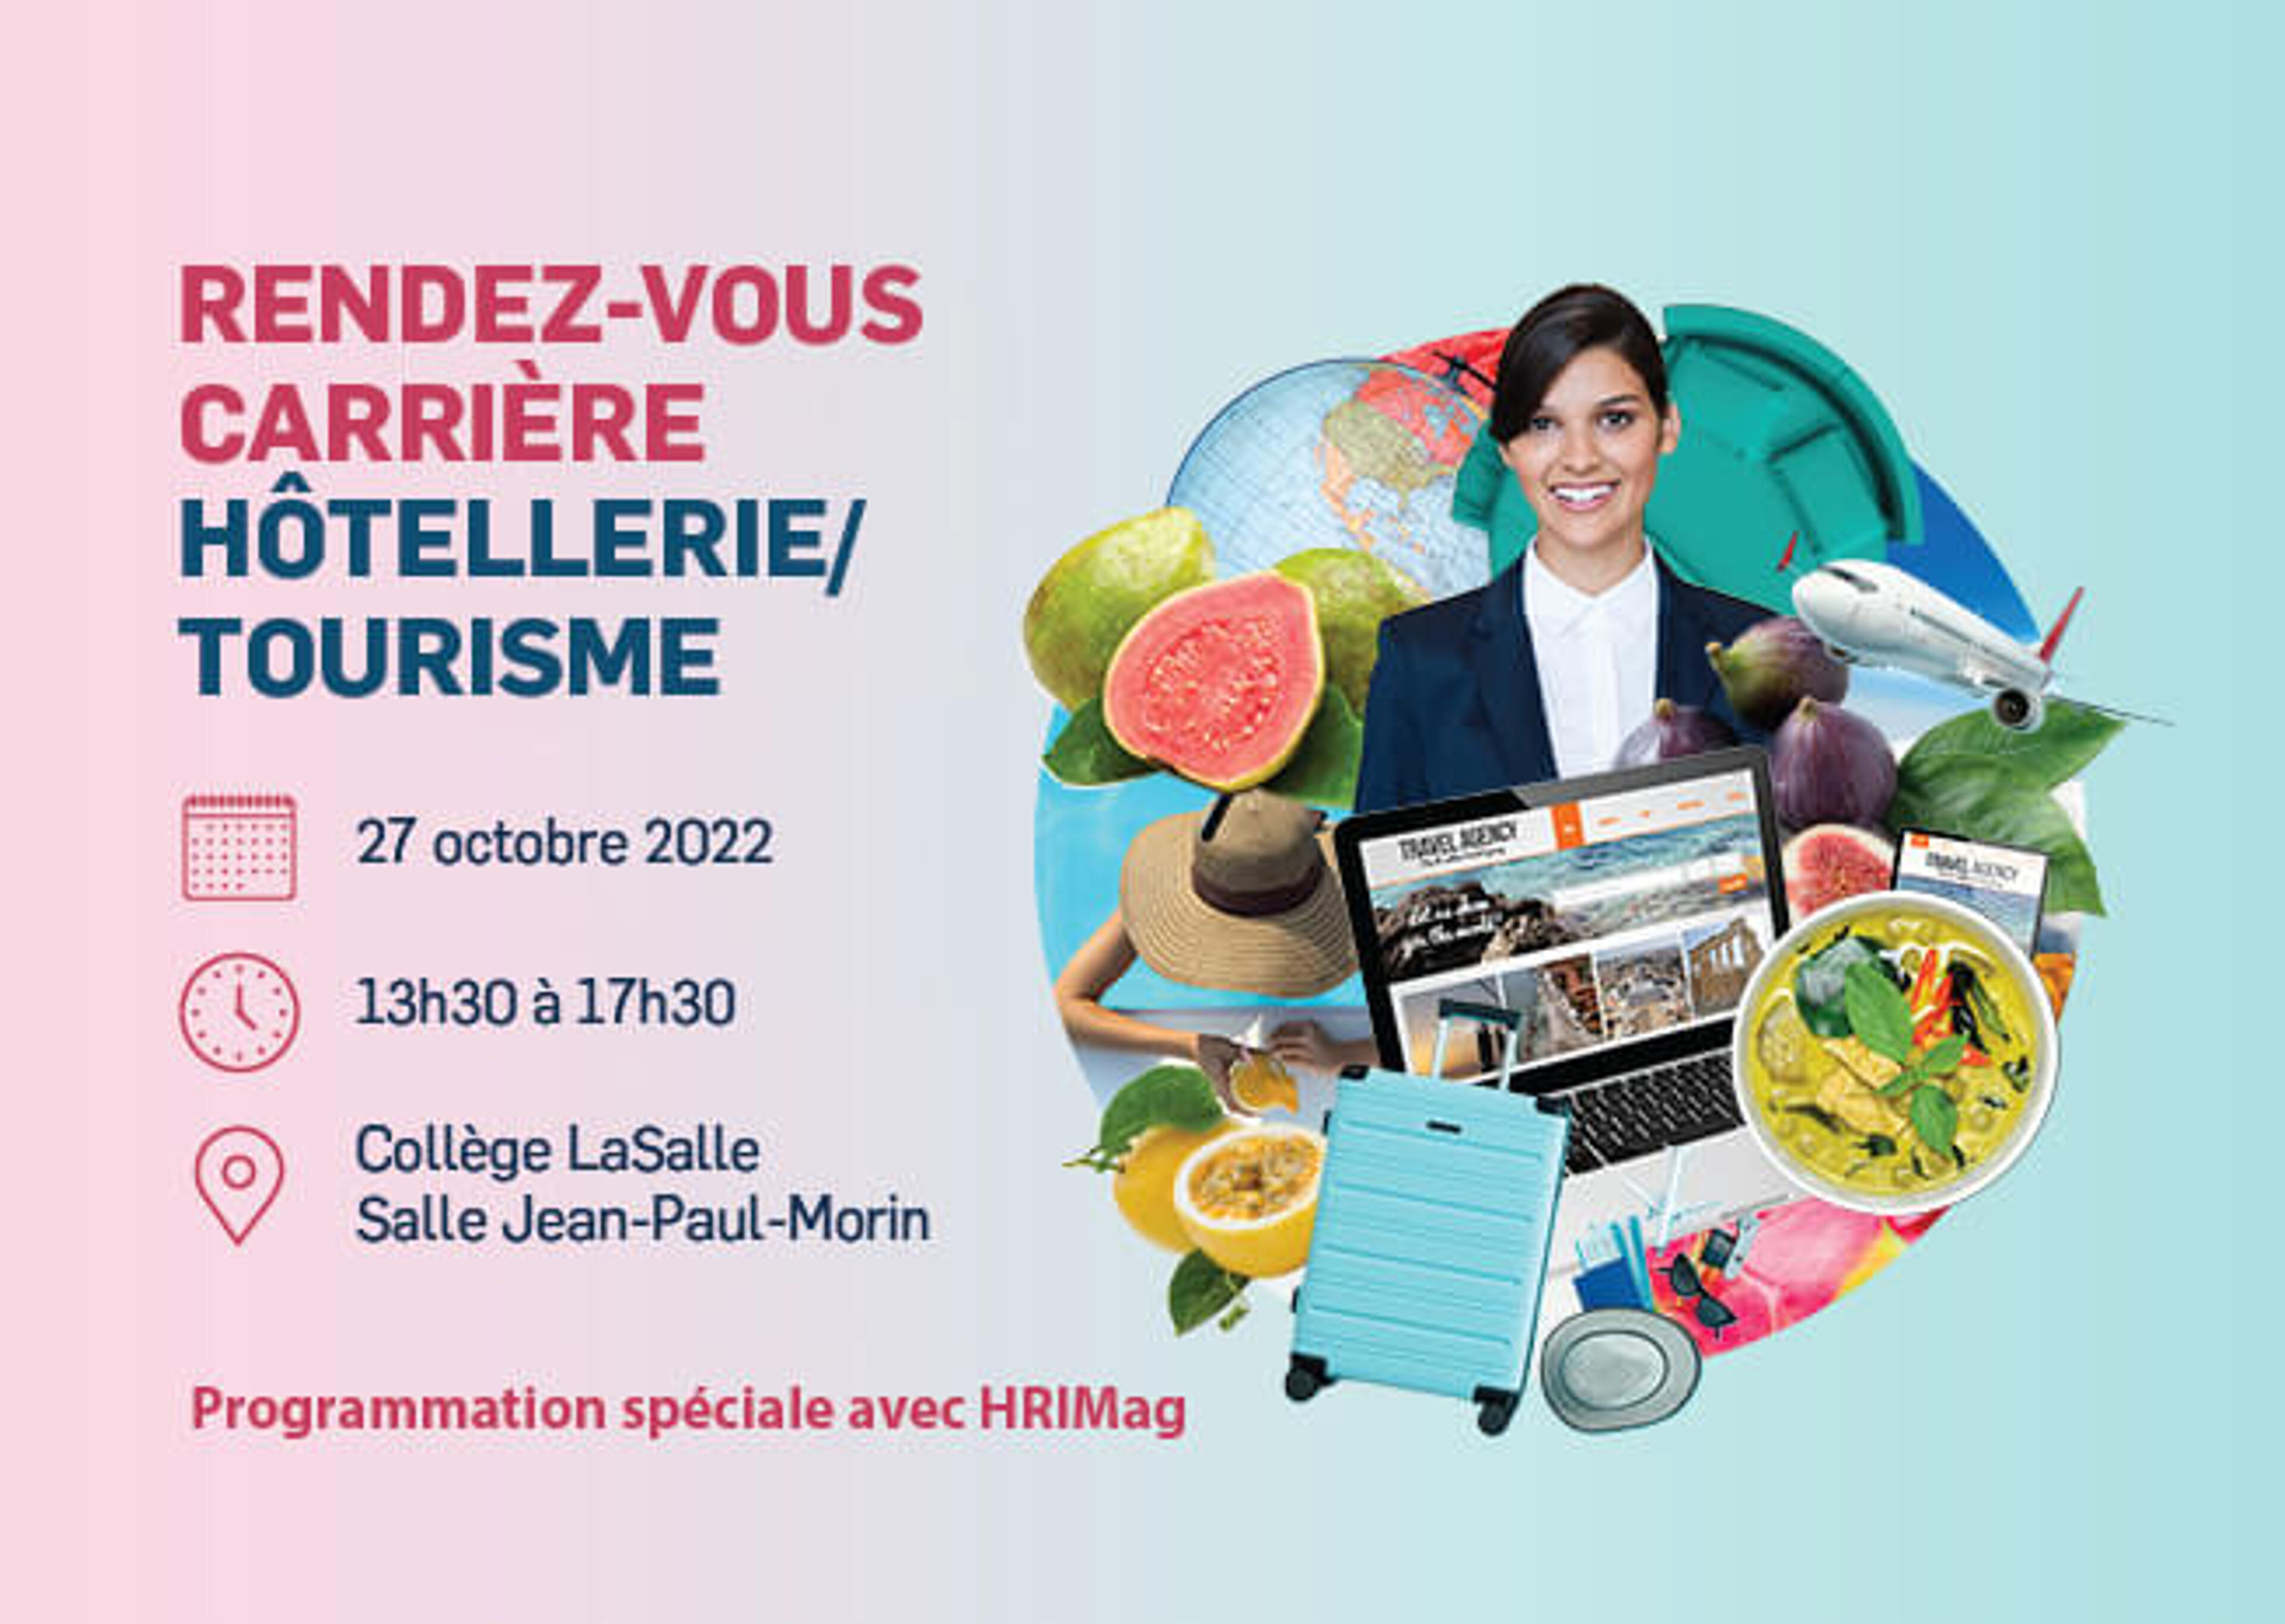 Événement de réseautage pour les carrières hôtelières et touristiques le 27 octobre, avec divers symboles du secteur, organisé par le Collège LaSalle.

